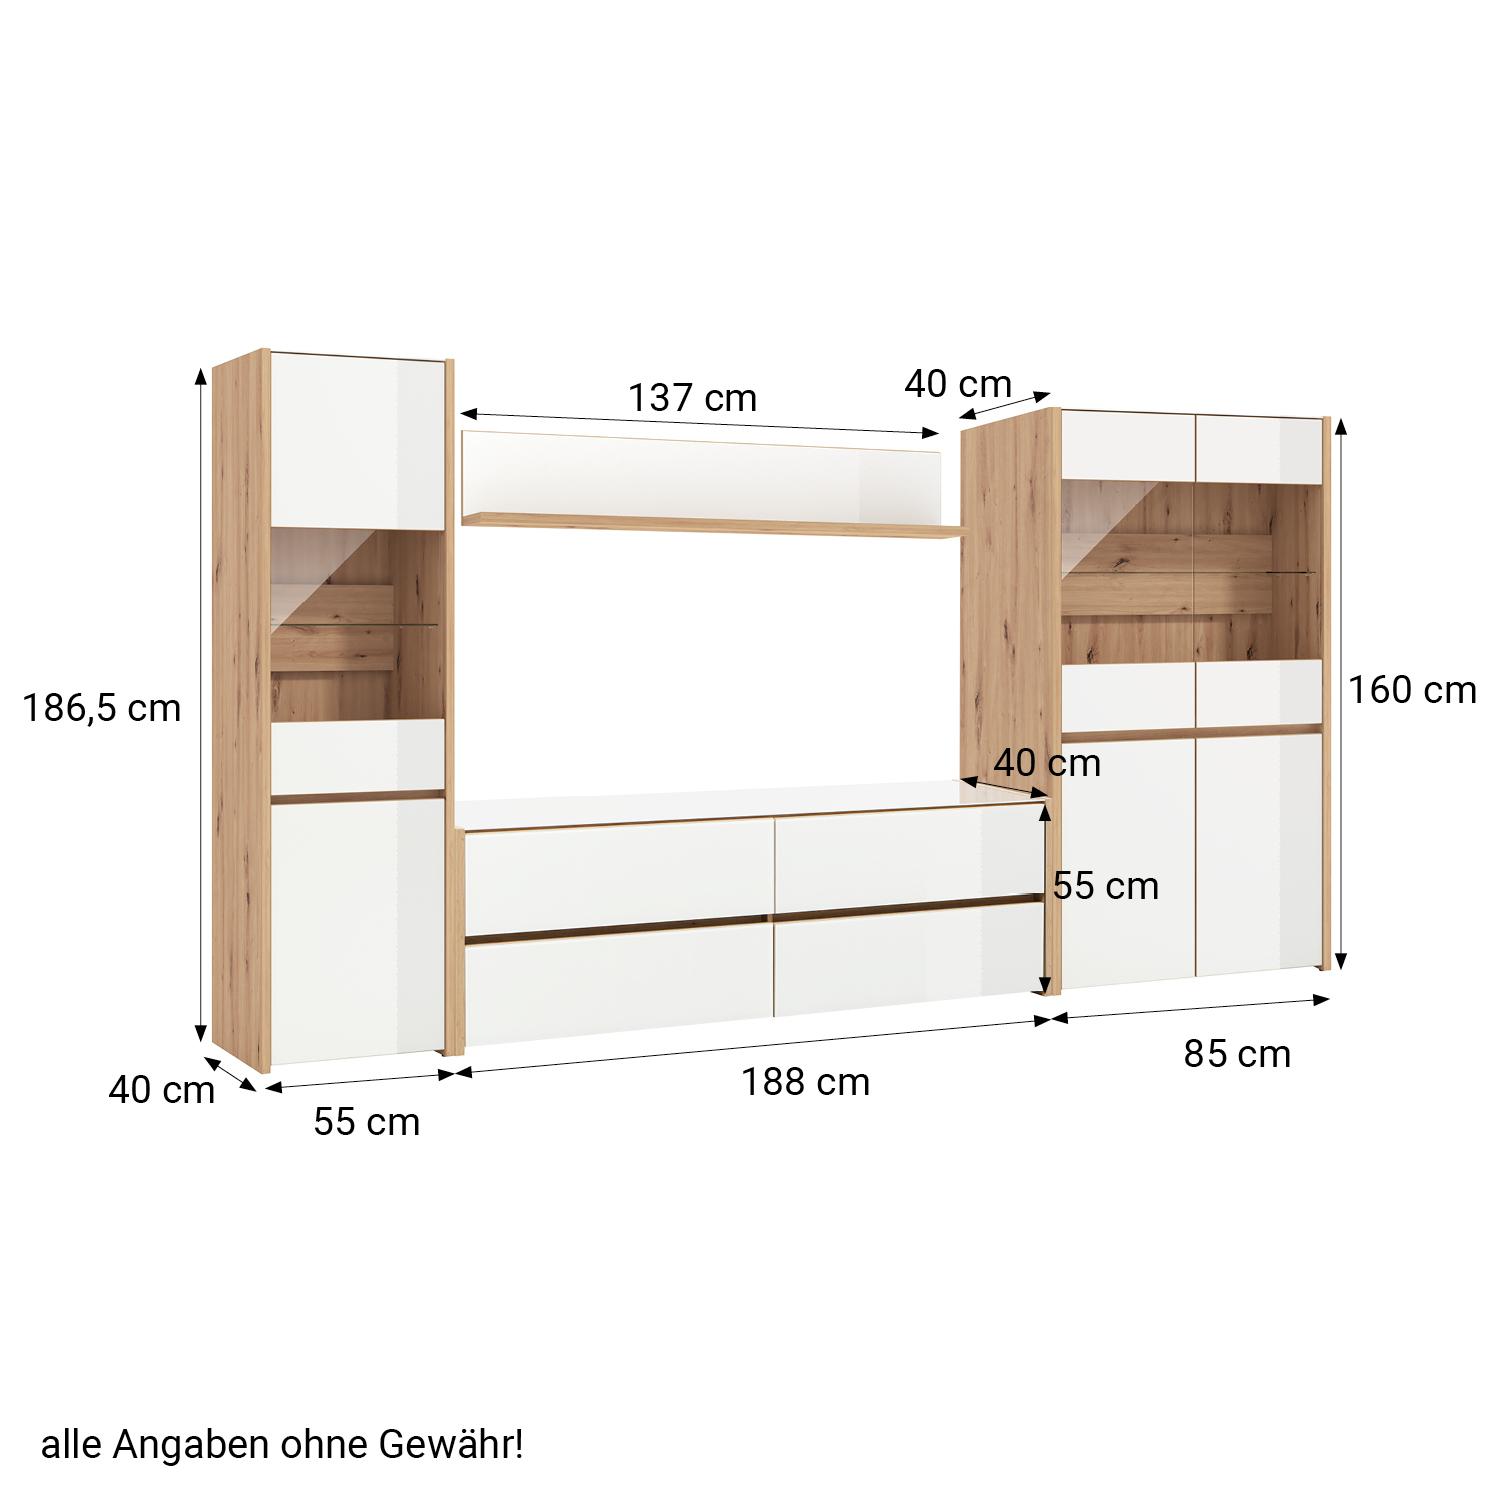 Wohnwand Schrankwand Anbauwand Wohnzimmer-Set 4 tlg. Modern Eiche Holz Glas Weiß Hochglanz